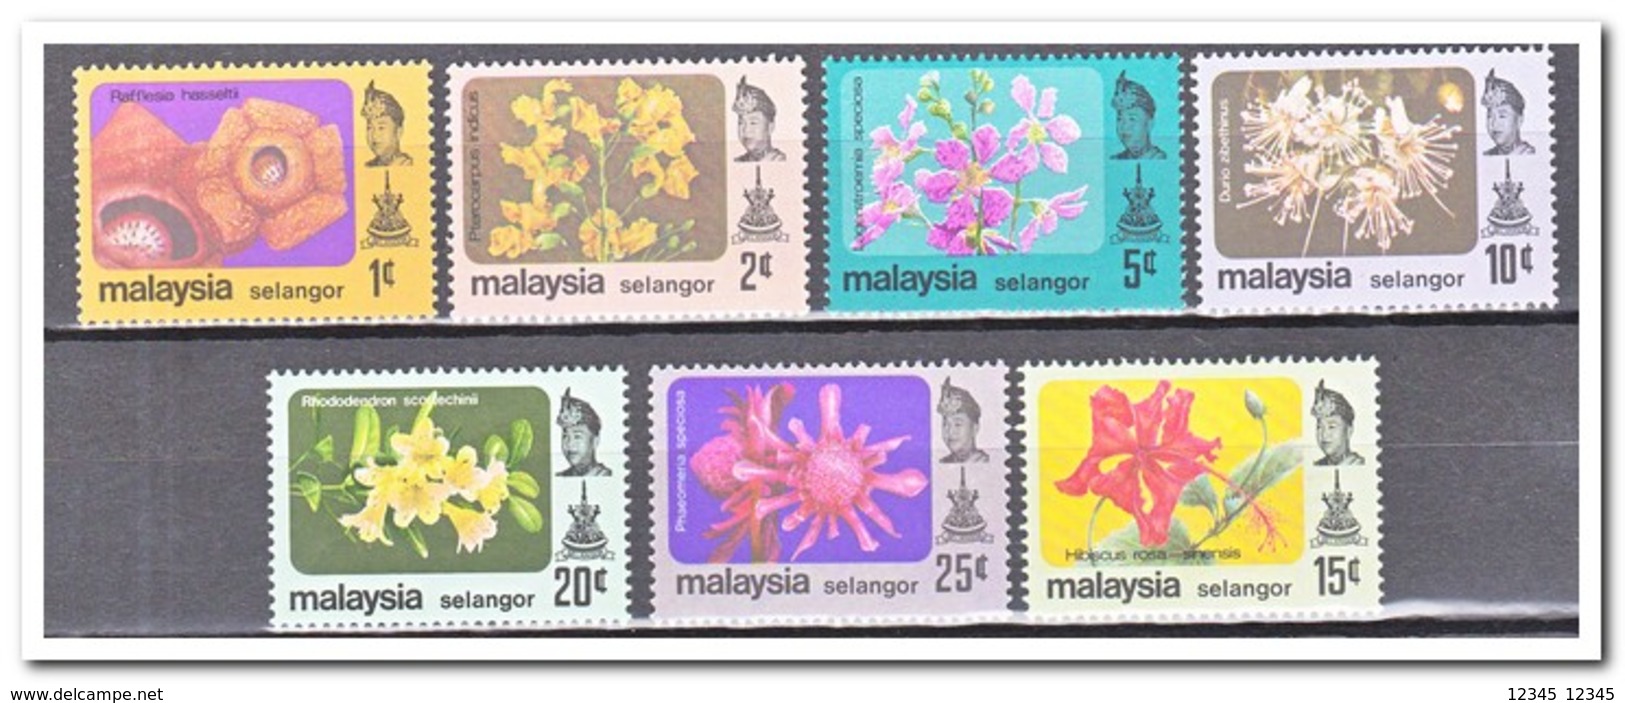 Maleisië Selangor 1975, Postfris MNH, Flowers - Maleisië (1964-...)